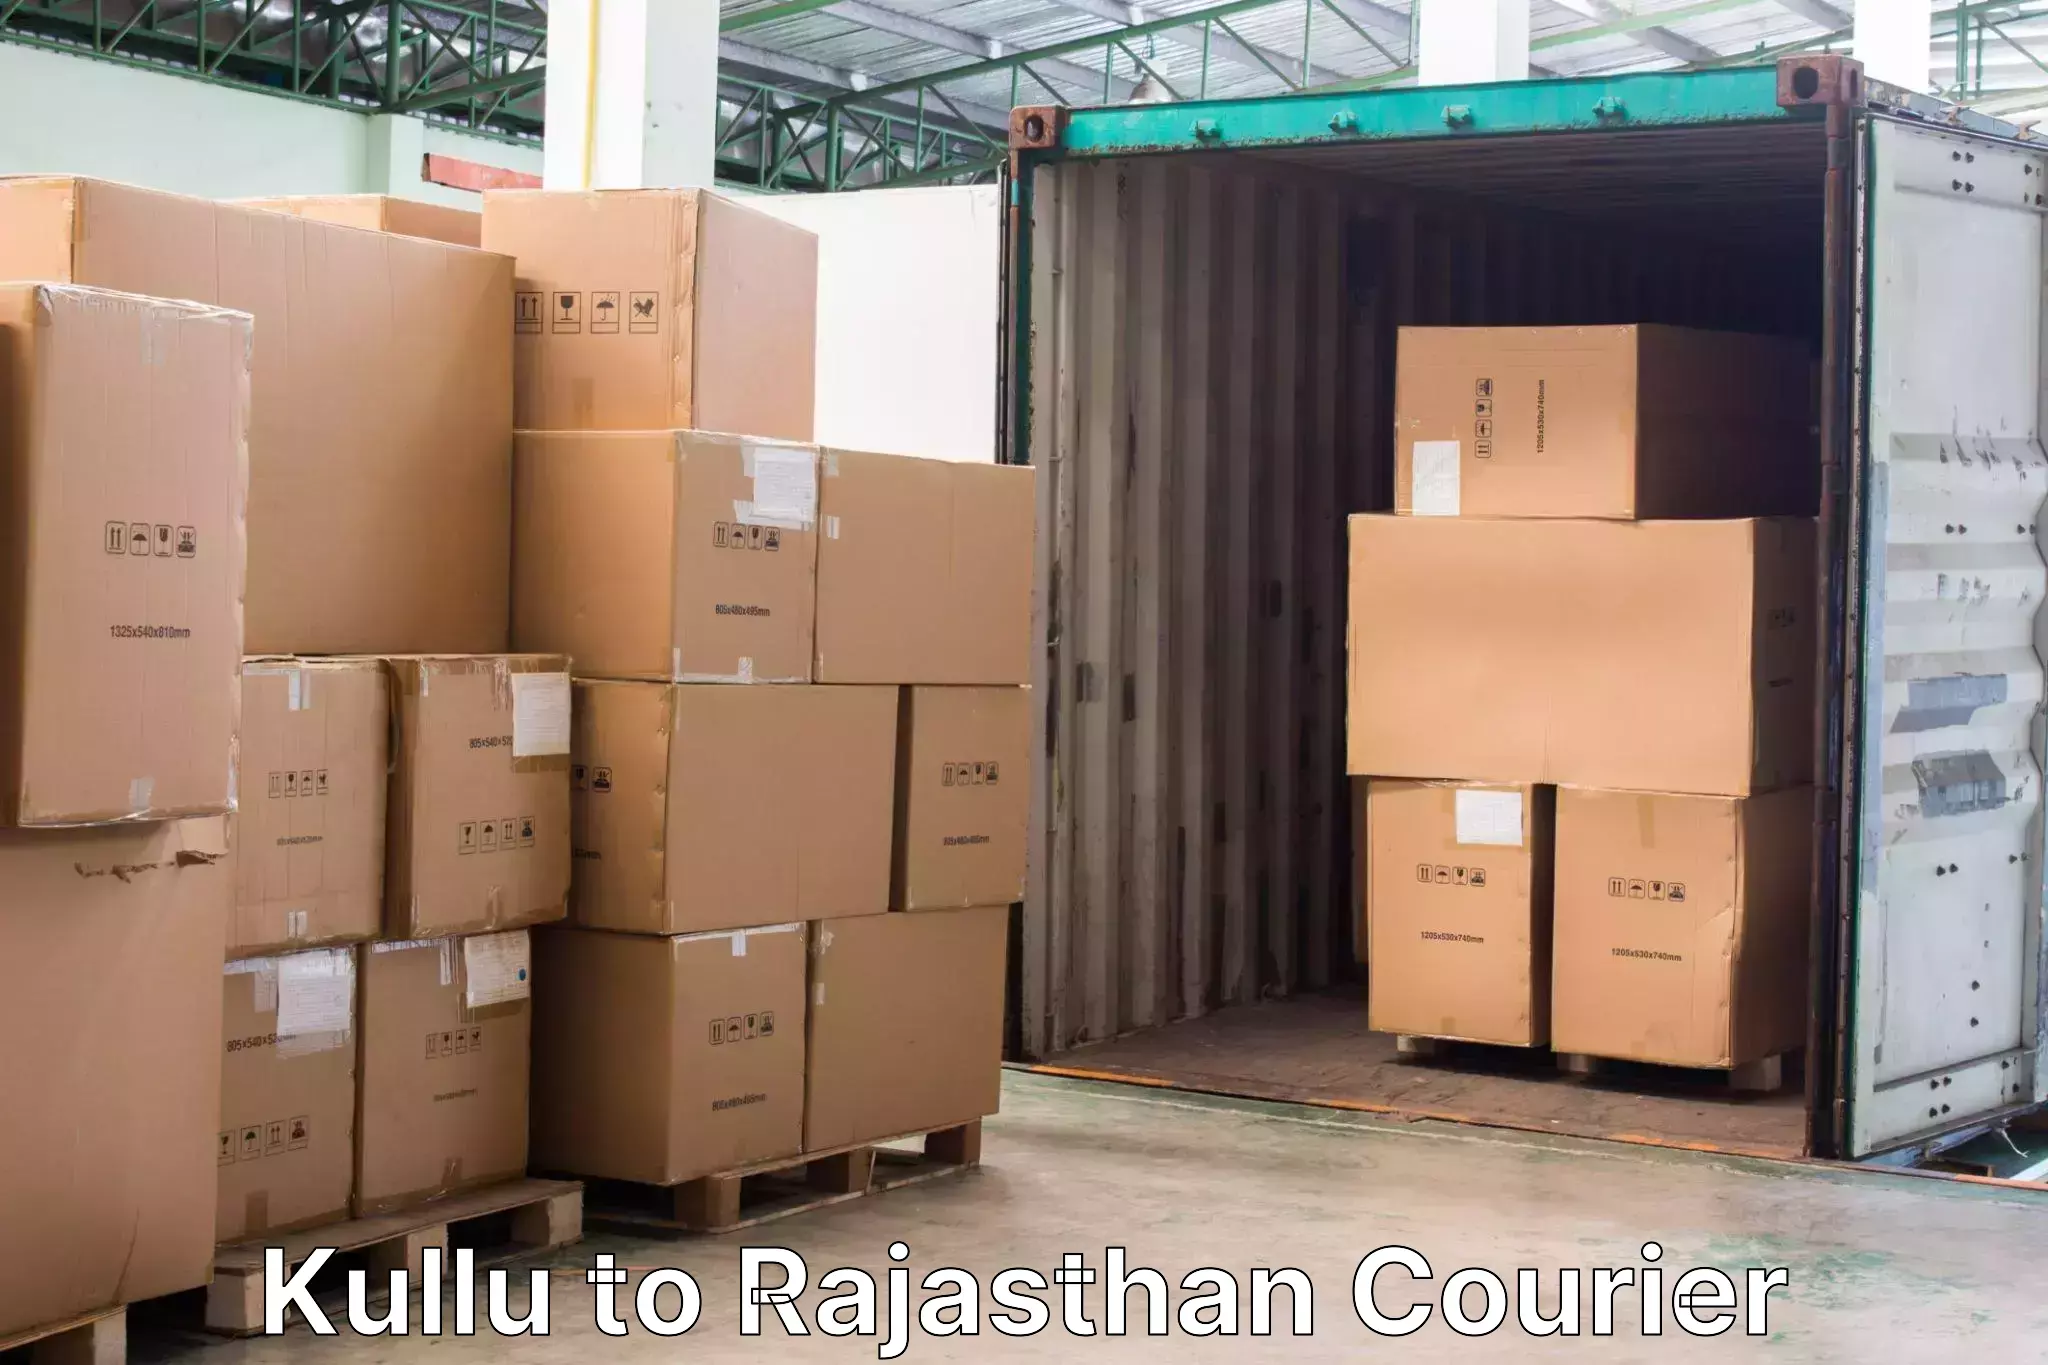 Luggage transport company Kullu to Banswara